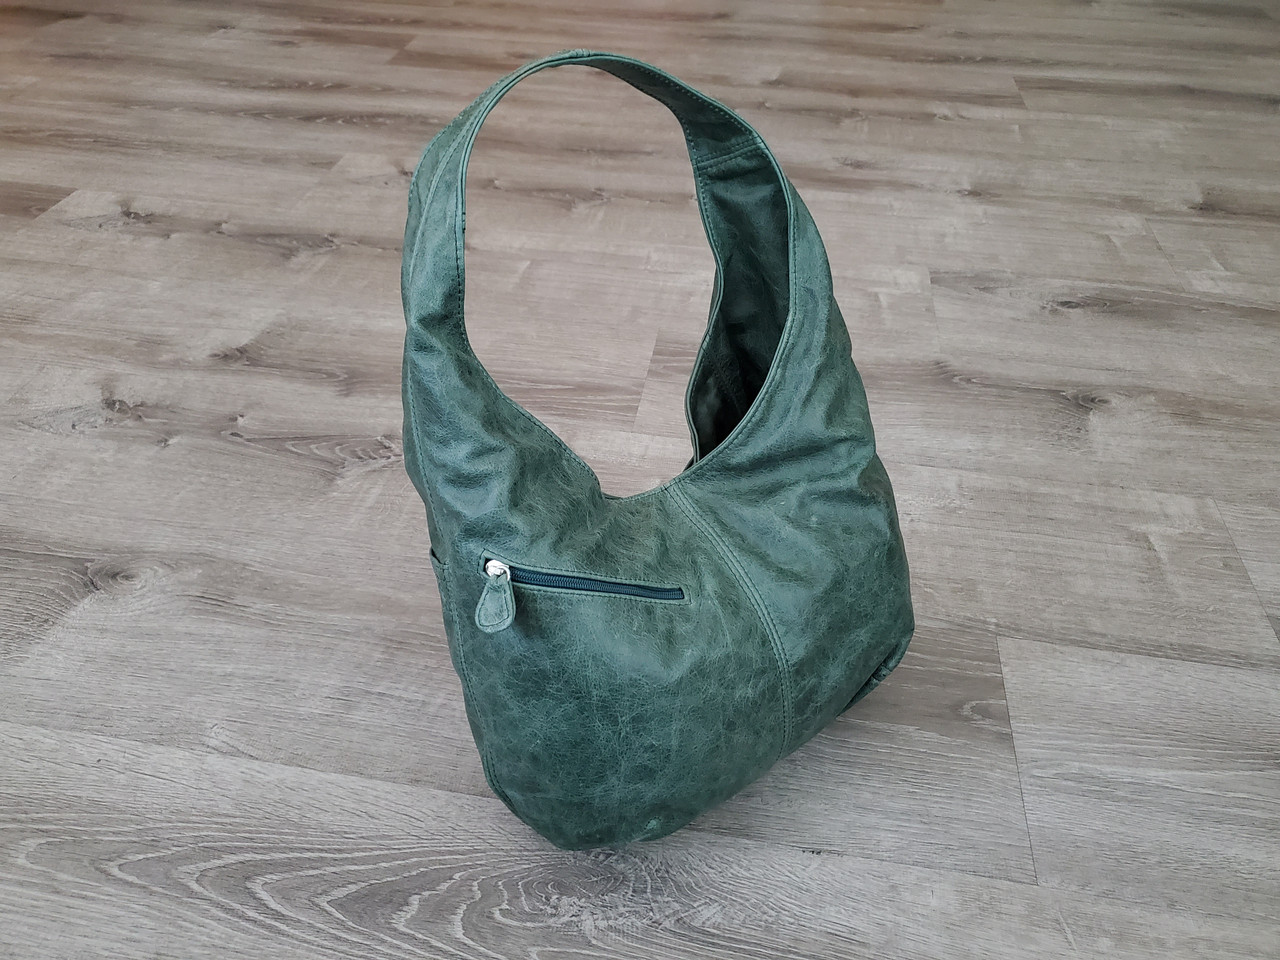 Alicia Grey Crossbody Bag